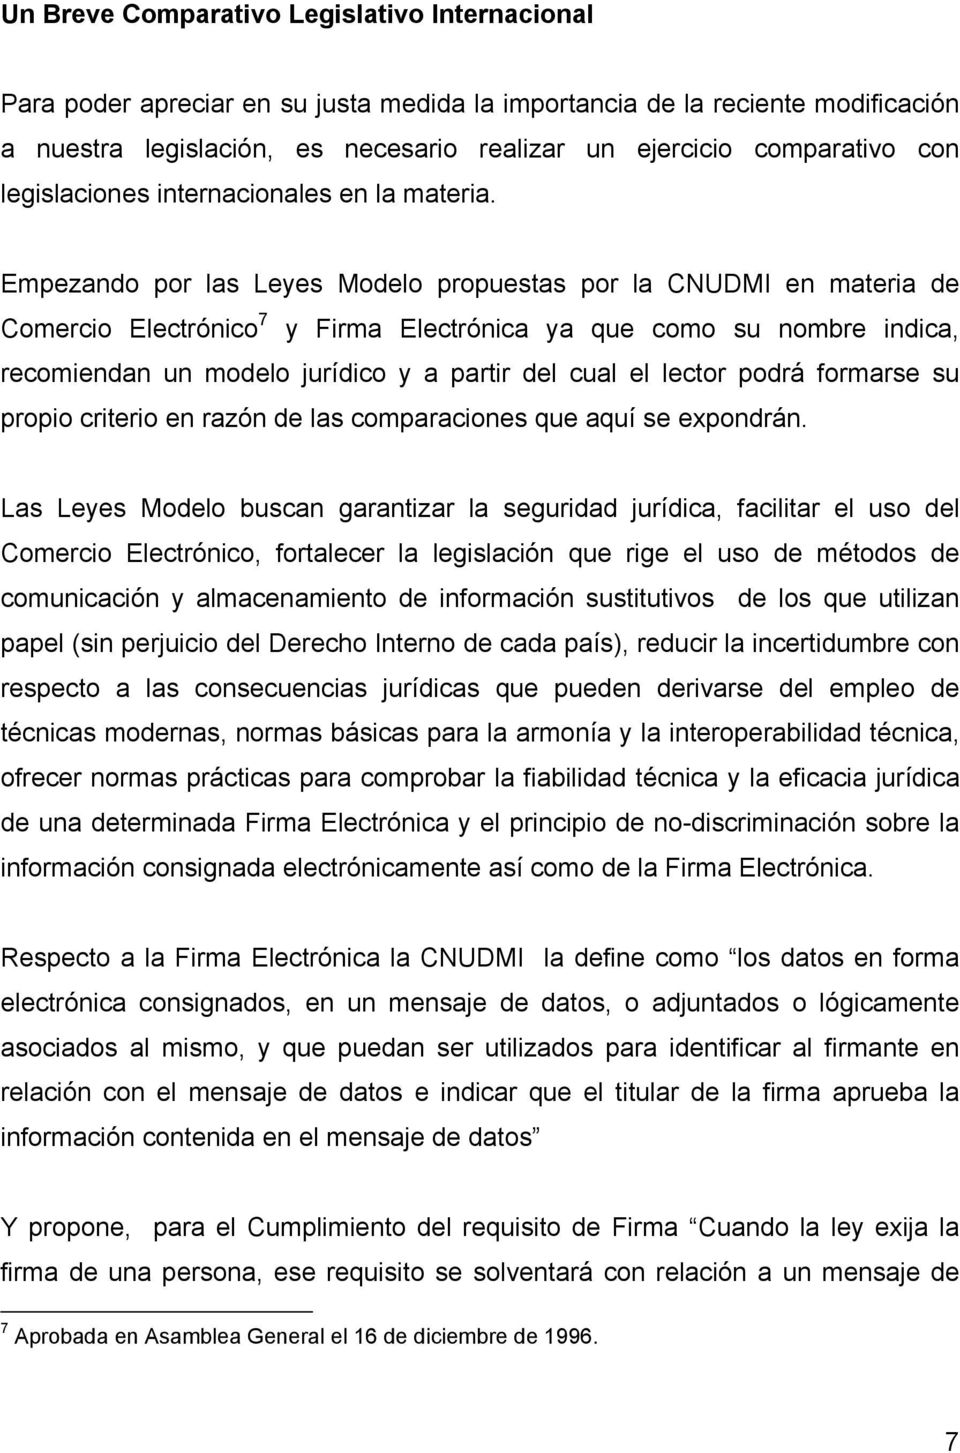 Empezando por las Leyes Modelo propuestas por la CNUDMI en materia de Comercio Electrónico 7 y Firma Electrónica ya que como su nombre indica, recomiendan un modelo jurídico y a partir del cual el